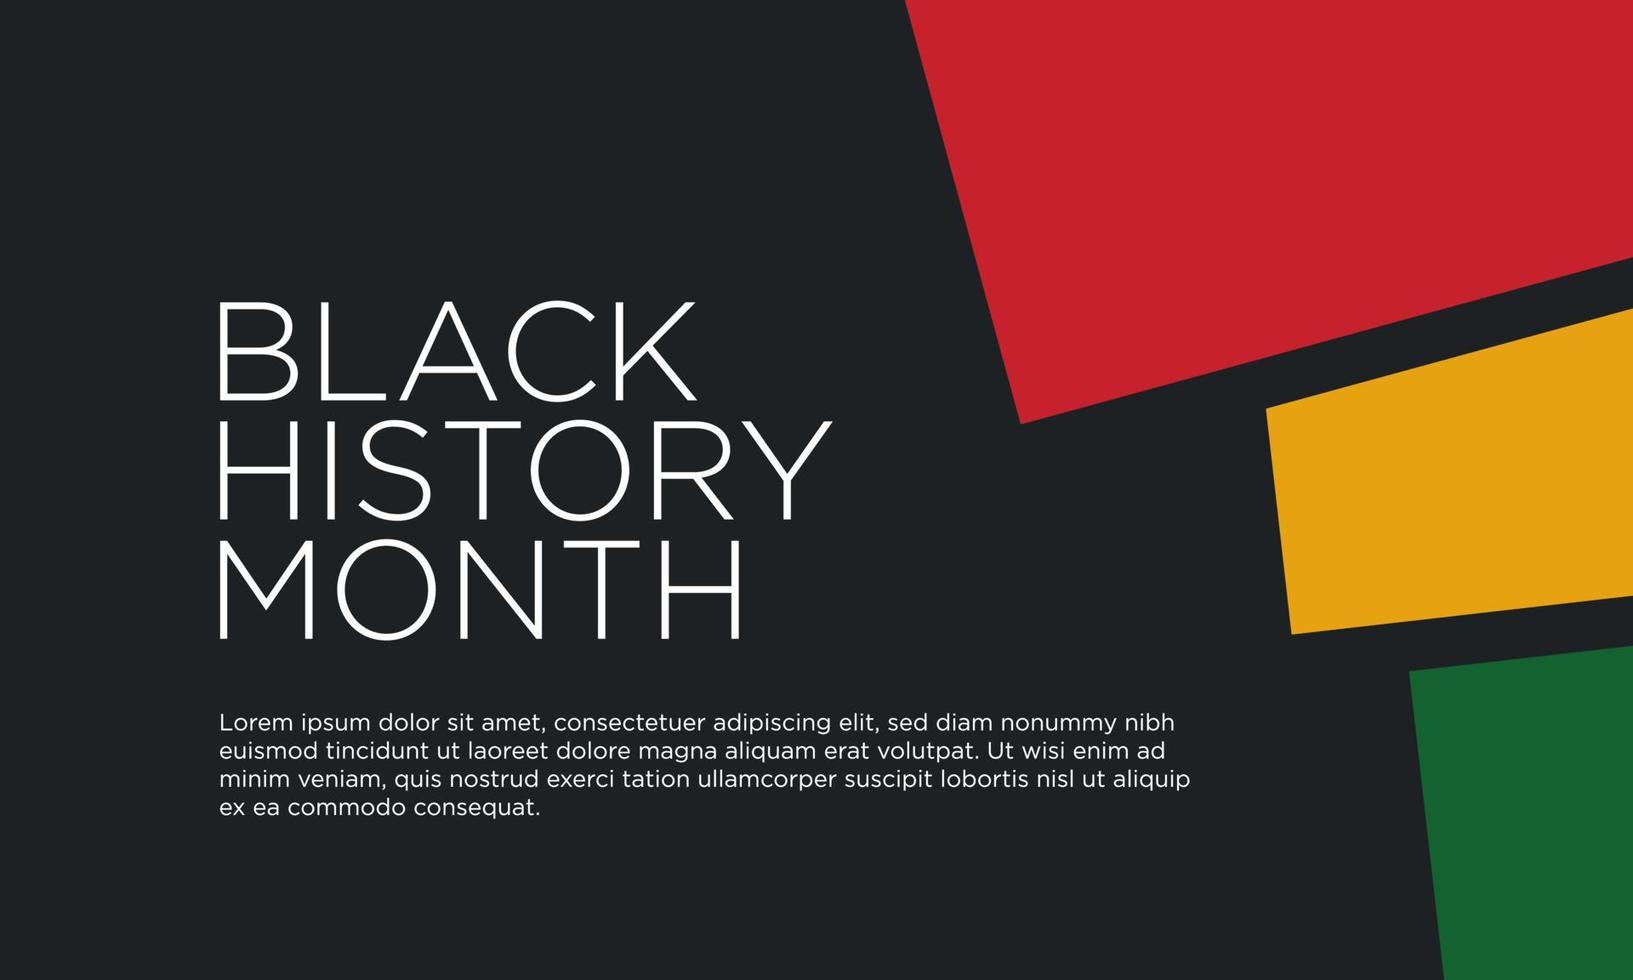 Black History Month Background Design. Vector Illustration.